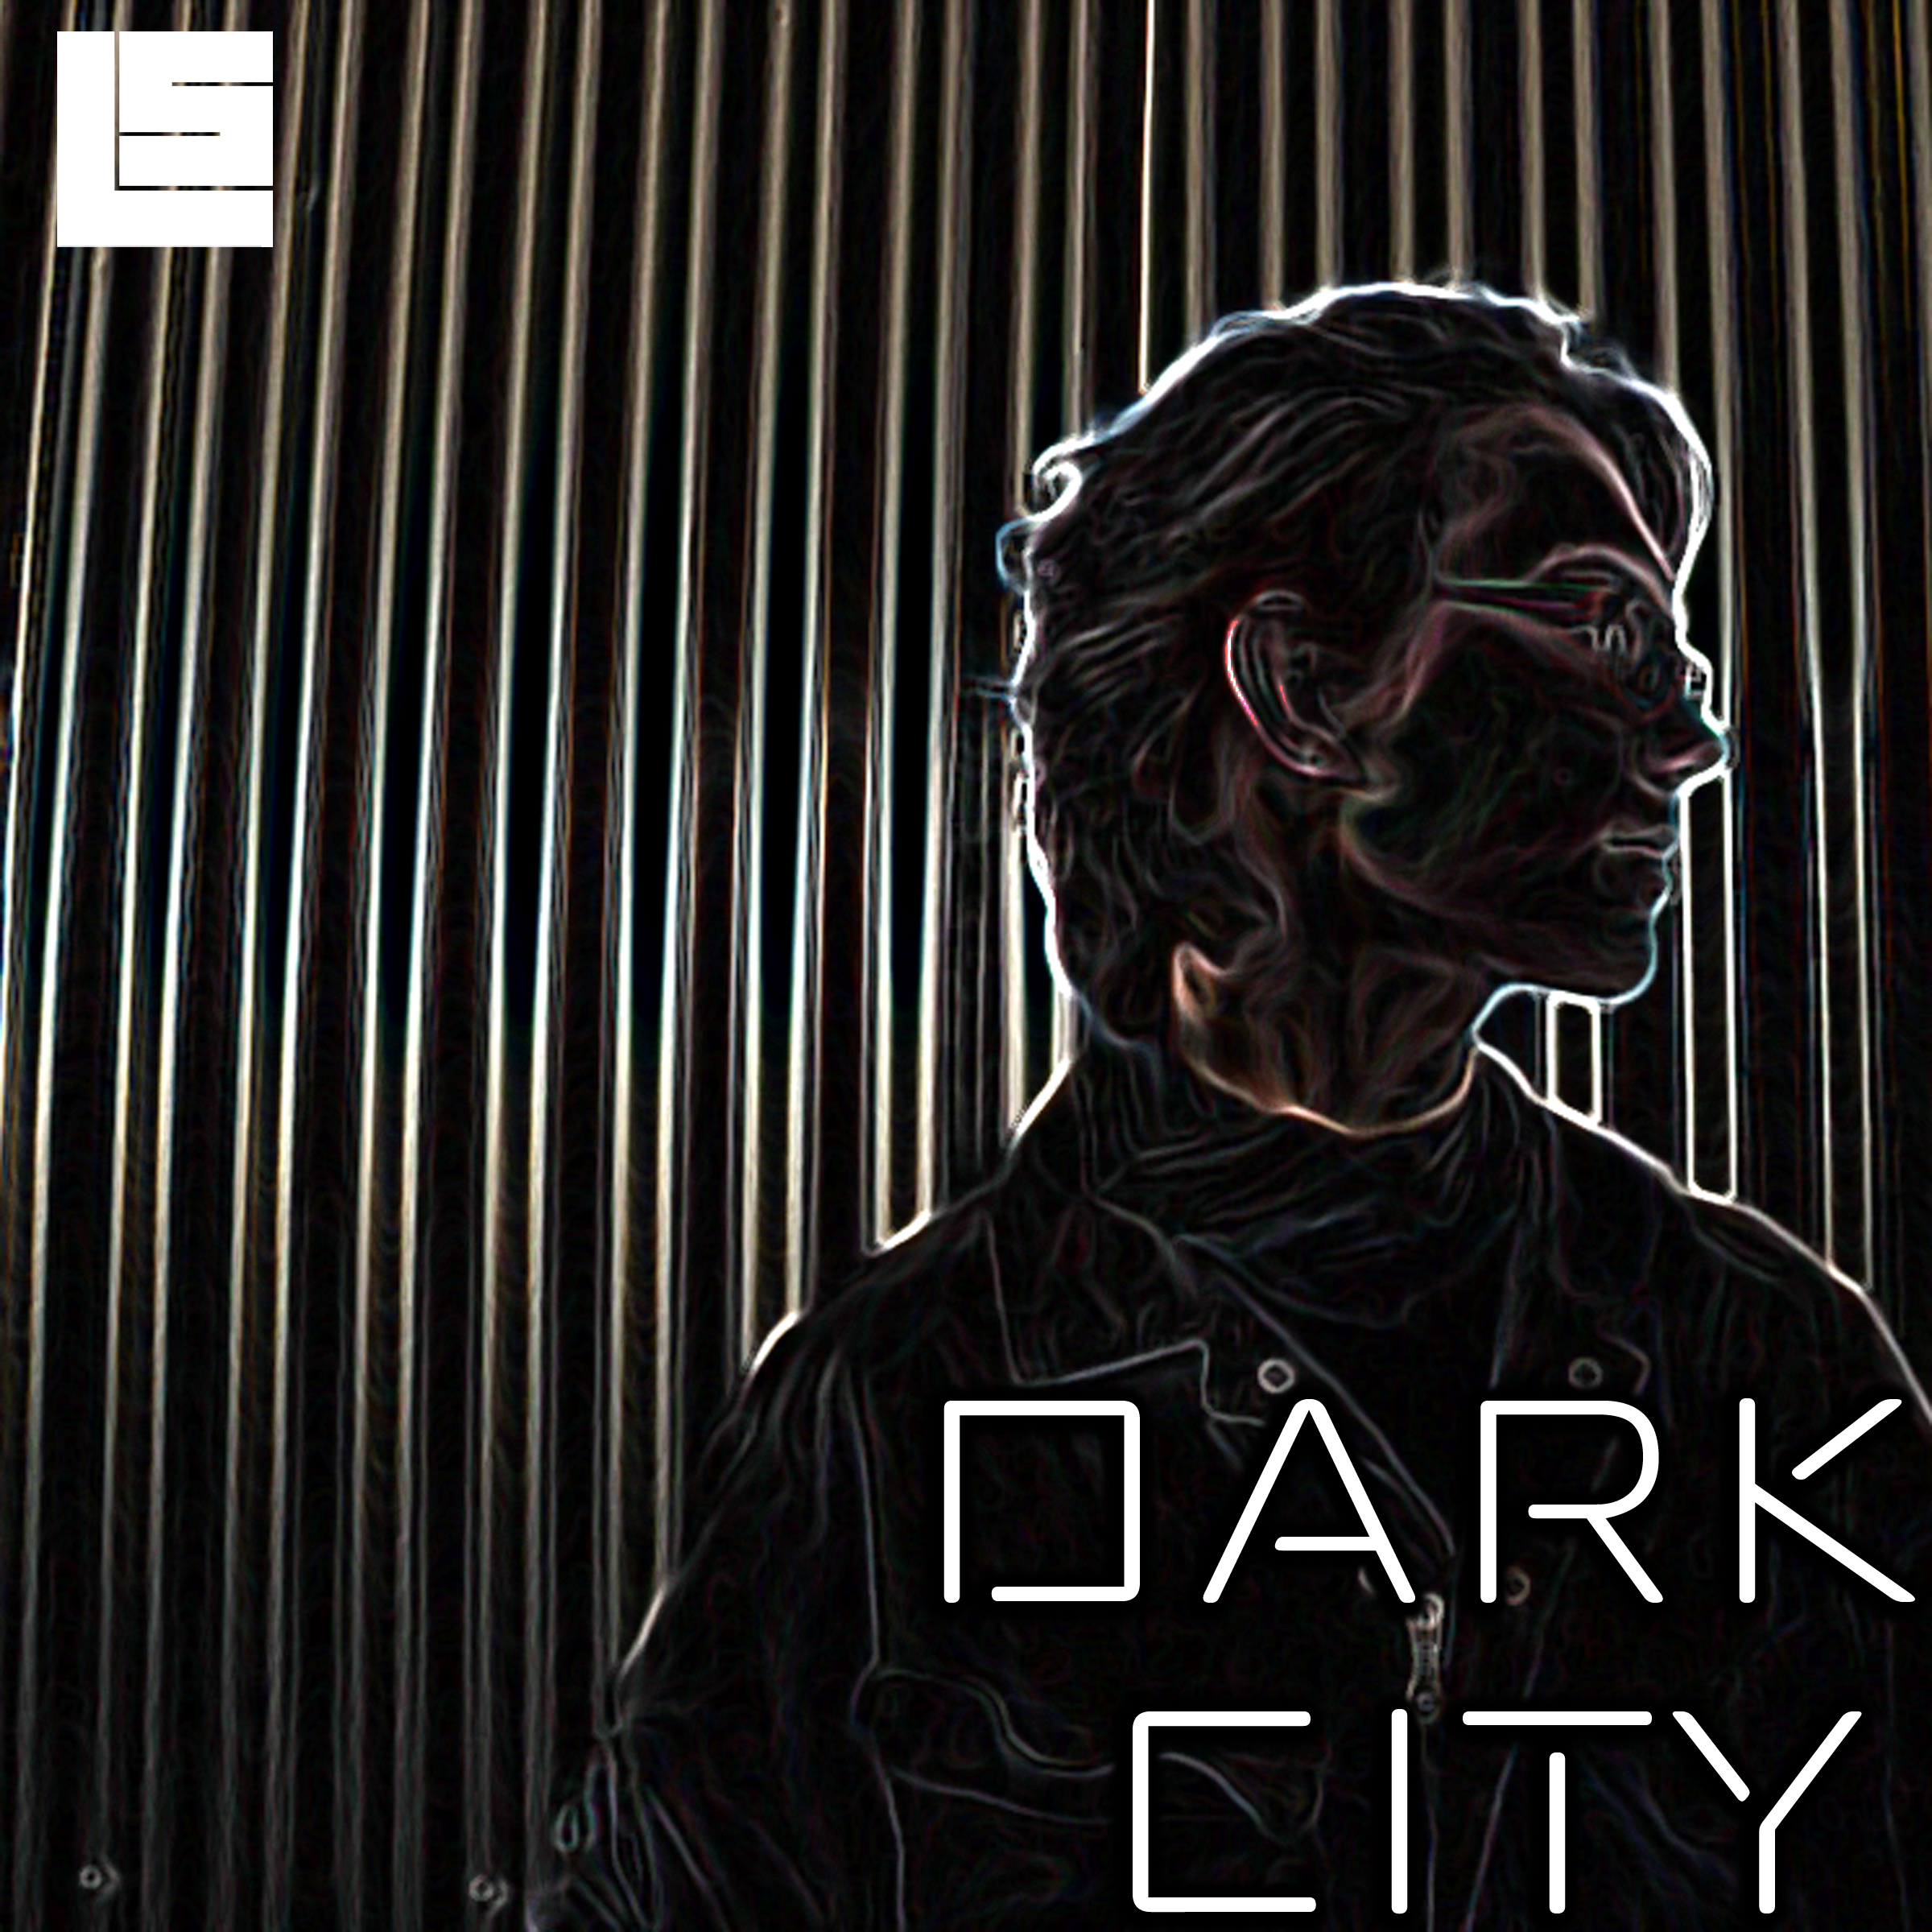 darkcity